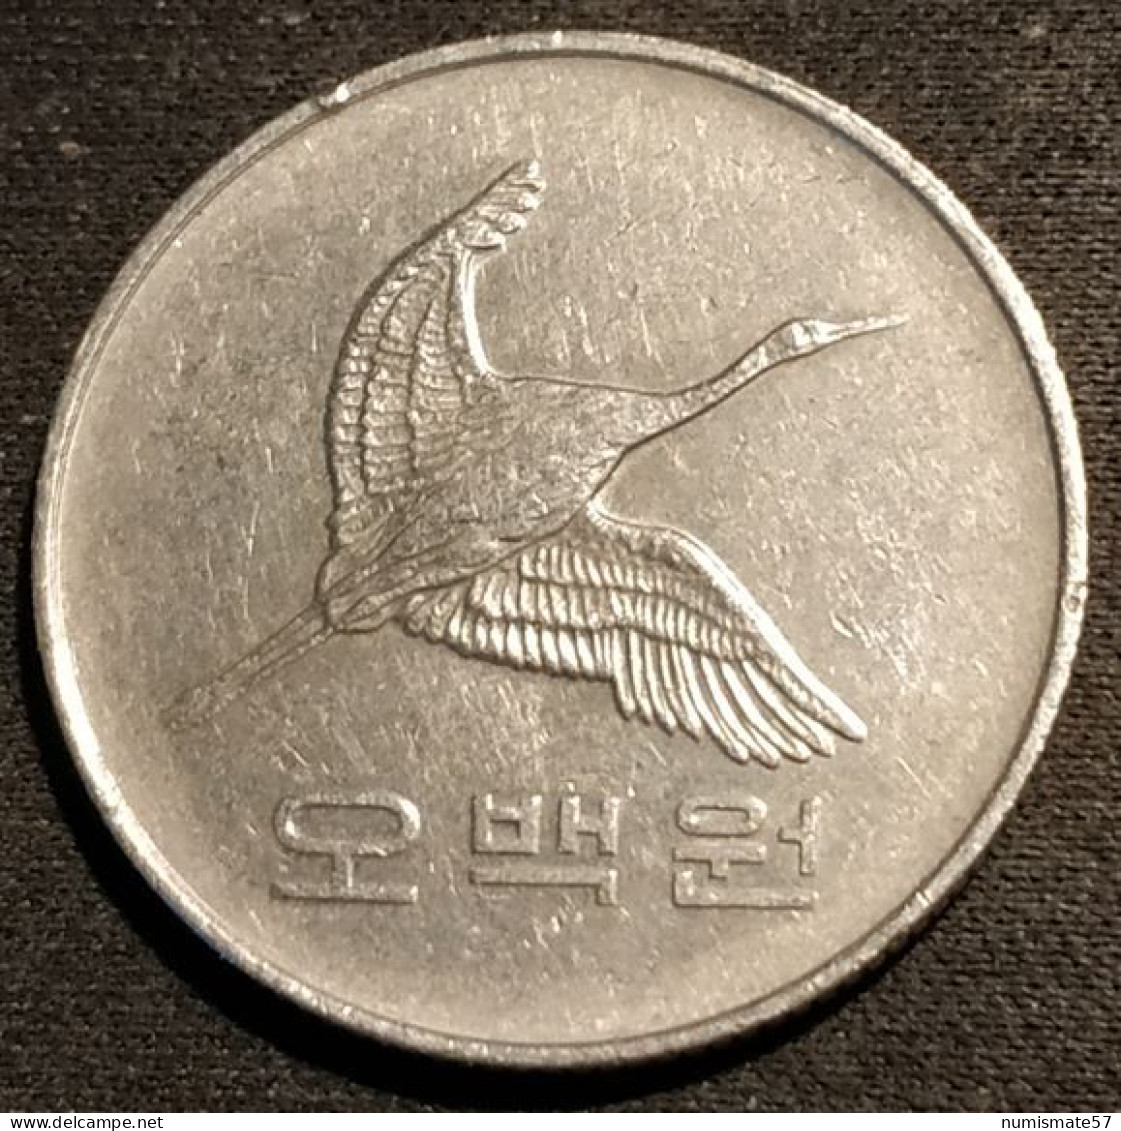 COREE DU SUD - SOUTH KOREA - 500 WON 1993 - Grue De Mandchourie - KM 27 - Corée Du Sud